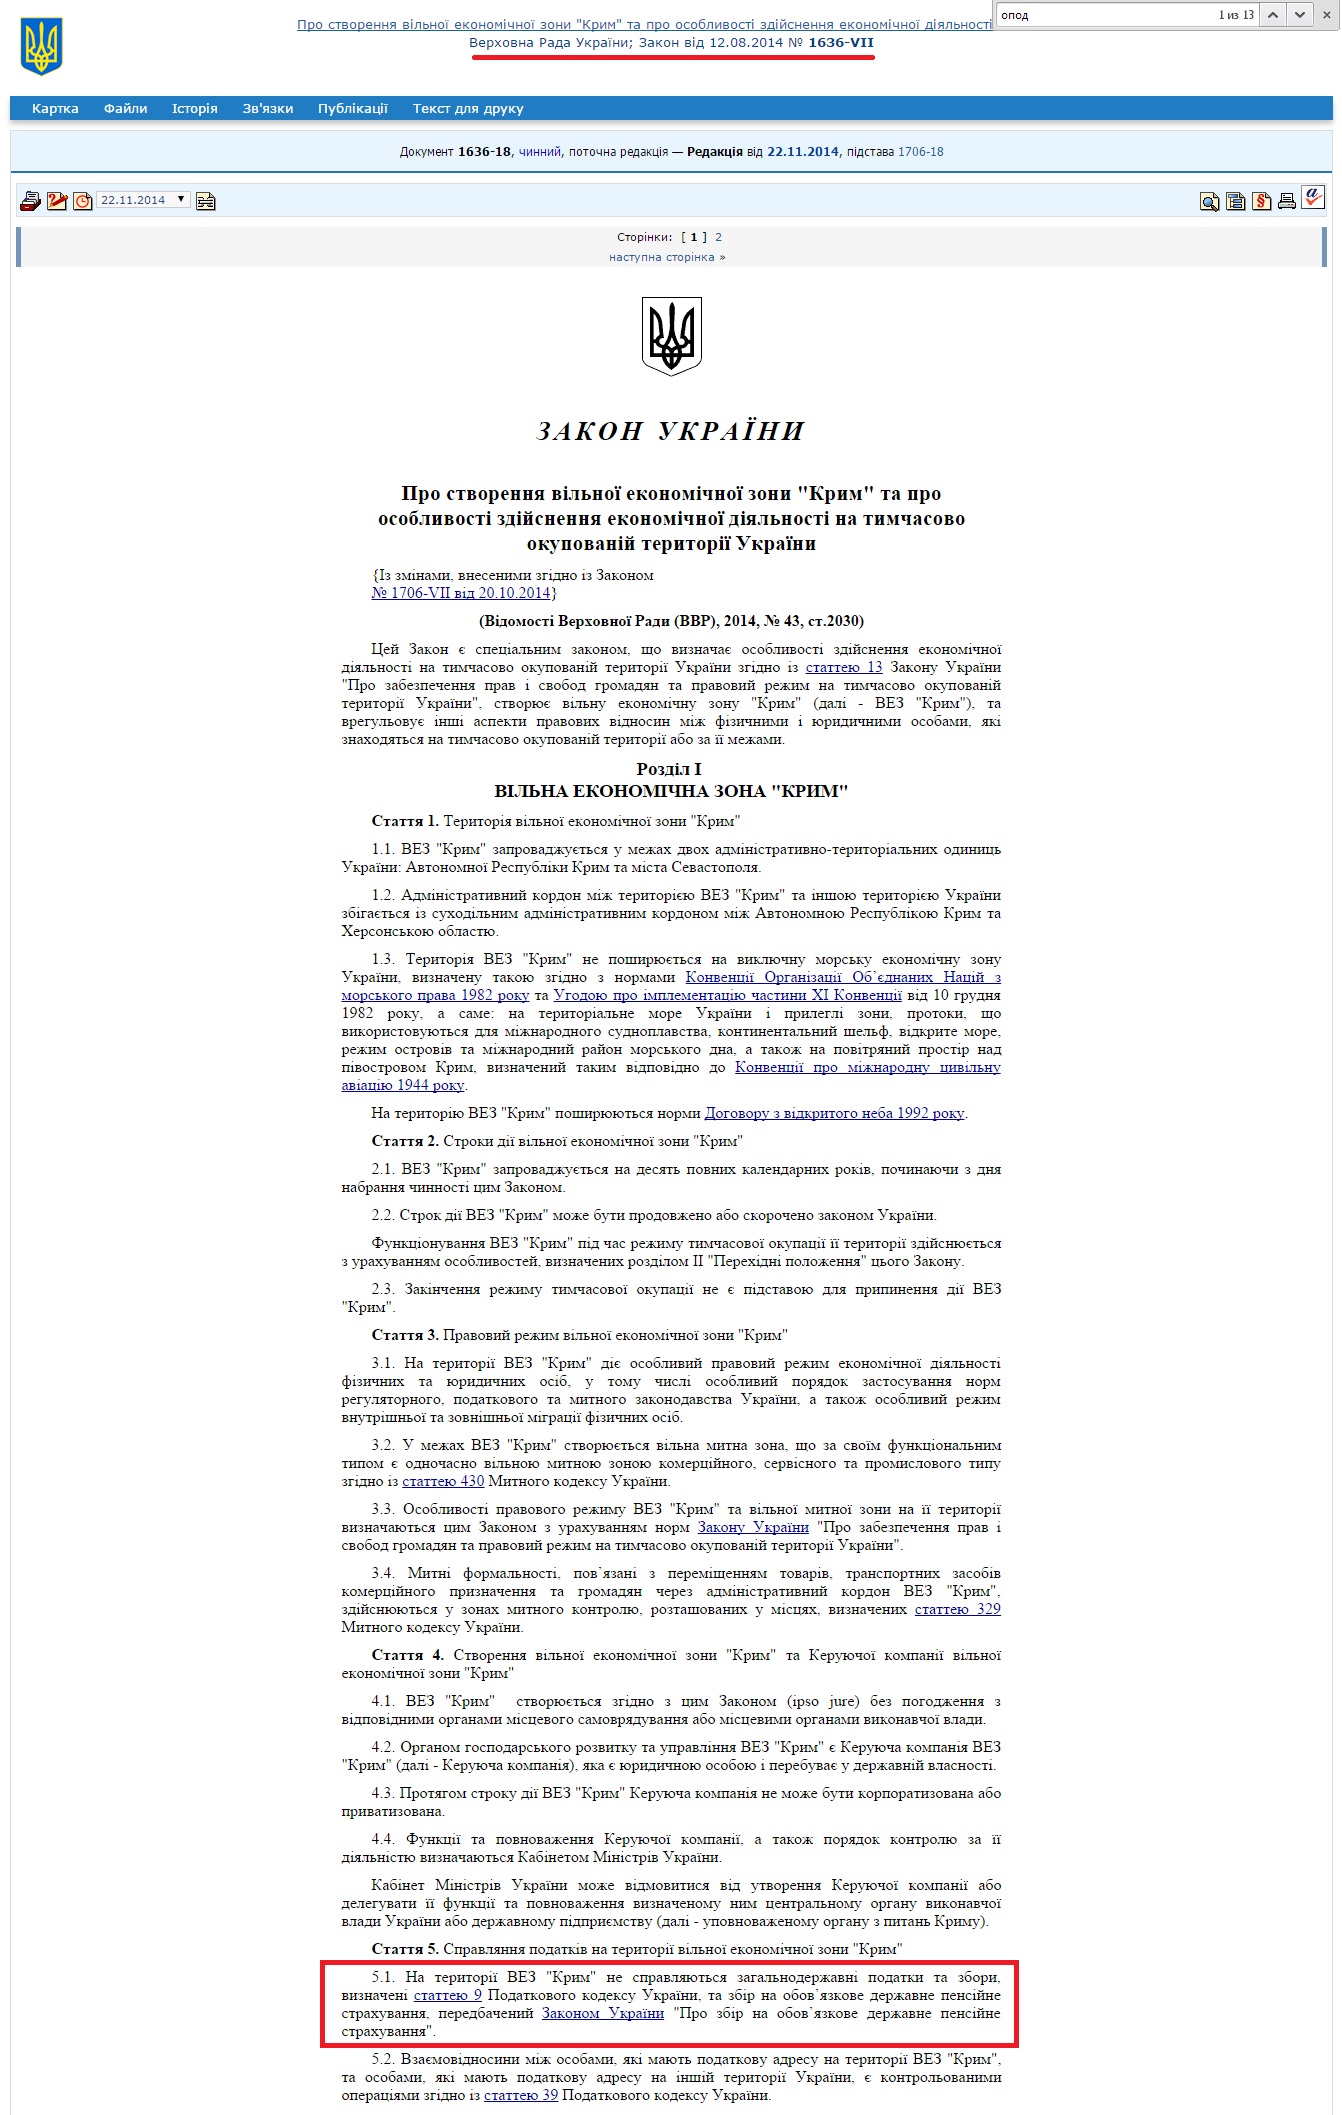 http://zakon1.rada.gov.ua/laws/show/1636-18